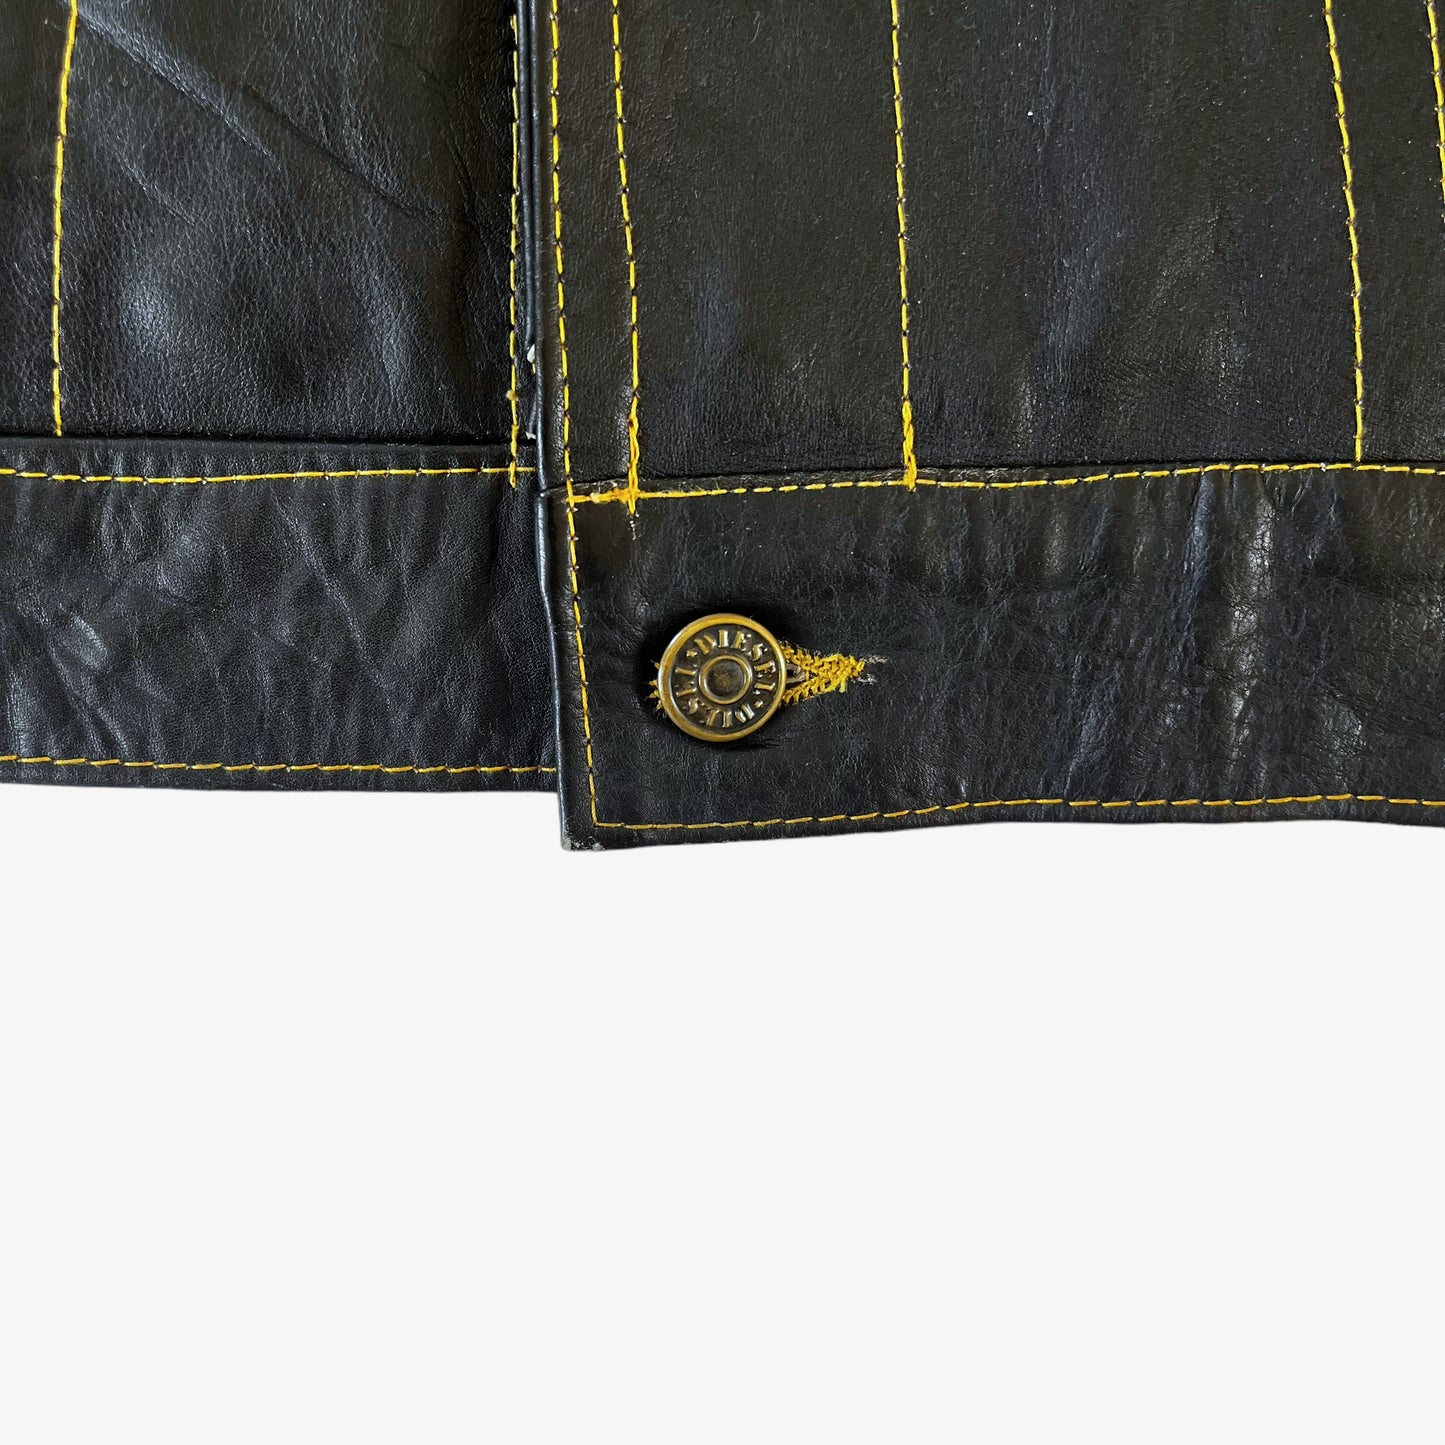 Vintage 90s Diesel Black Leather Trucker Jacket Button - Casspio's Dream